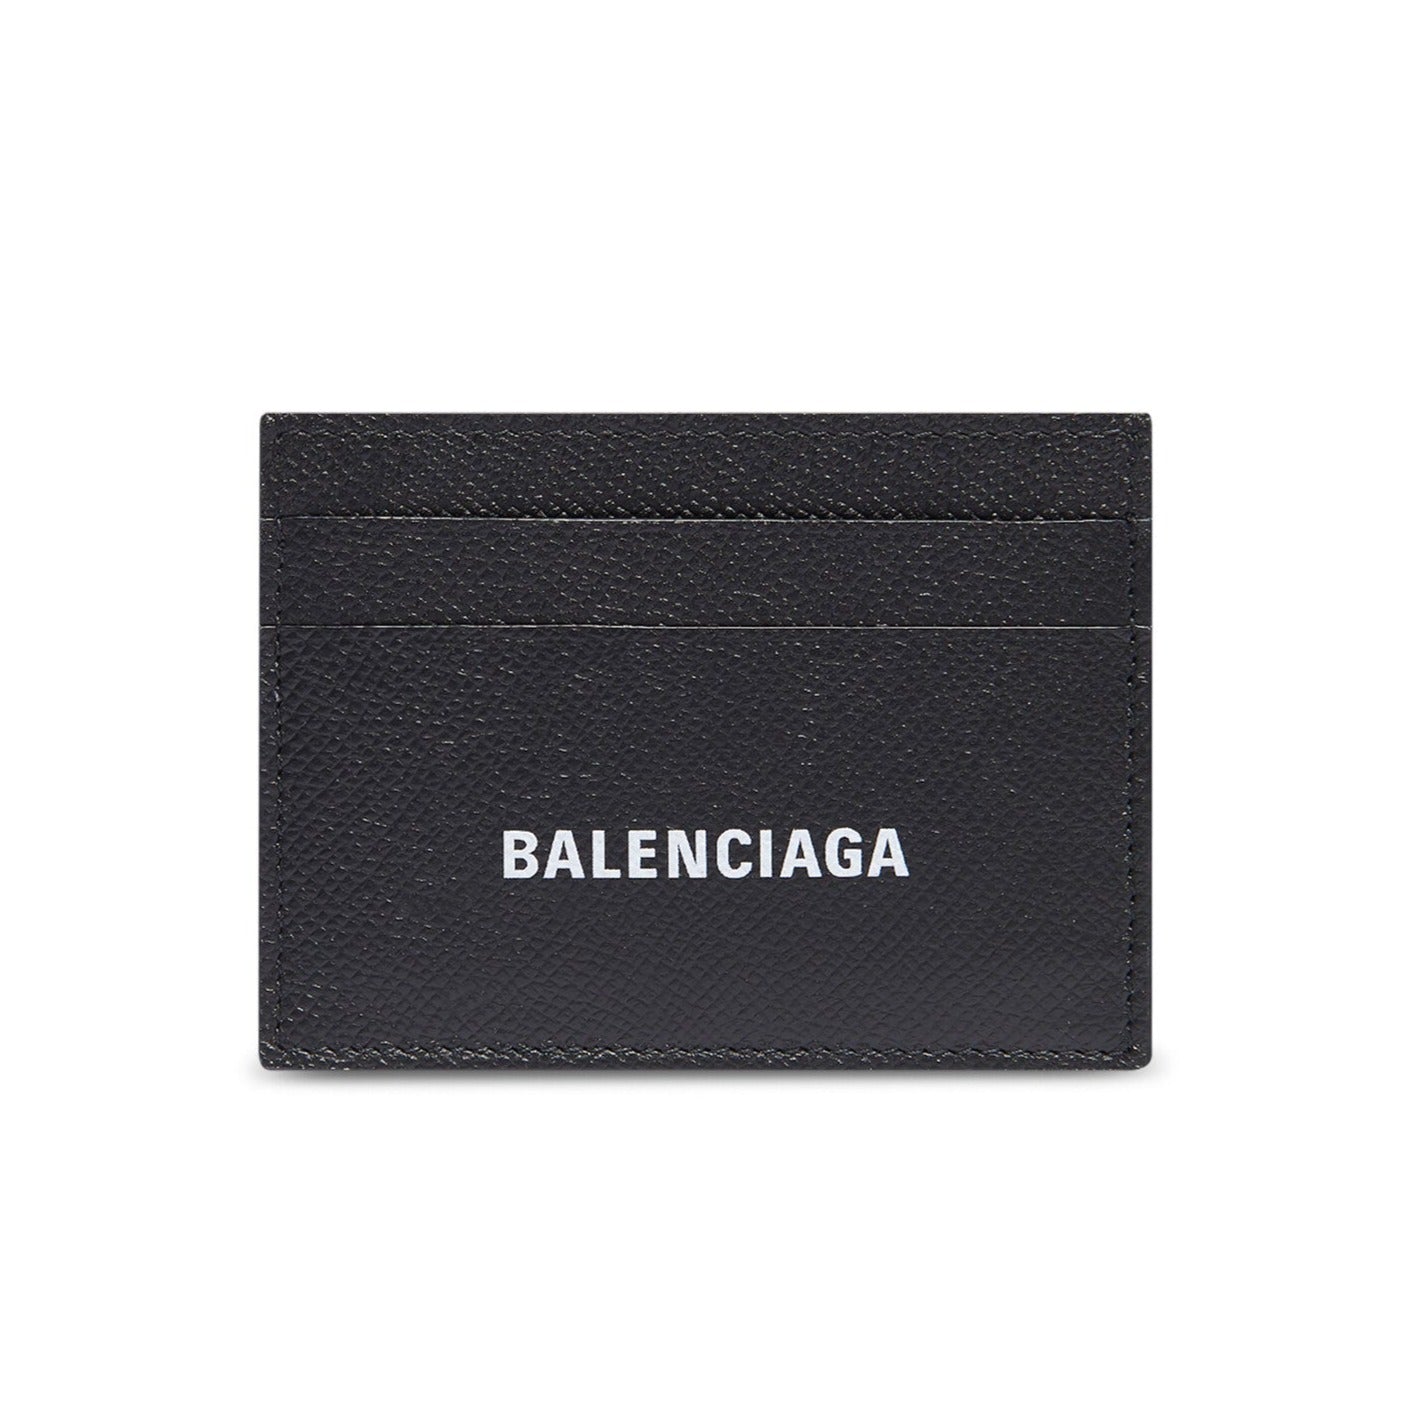 BALENCIAGA CARD HOLDER